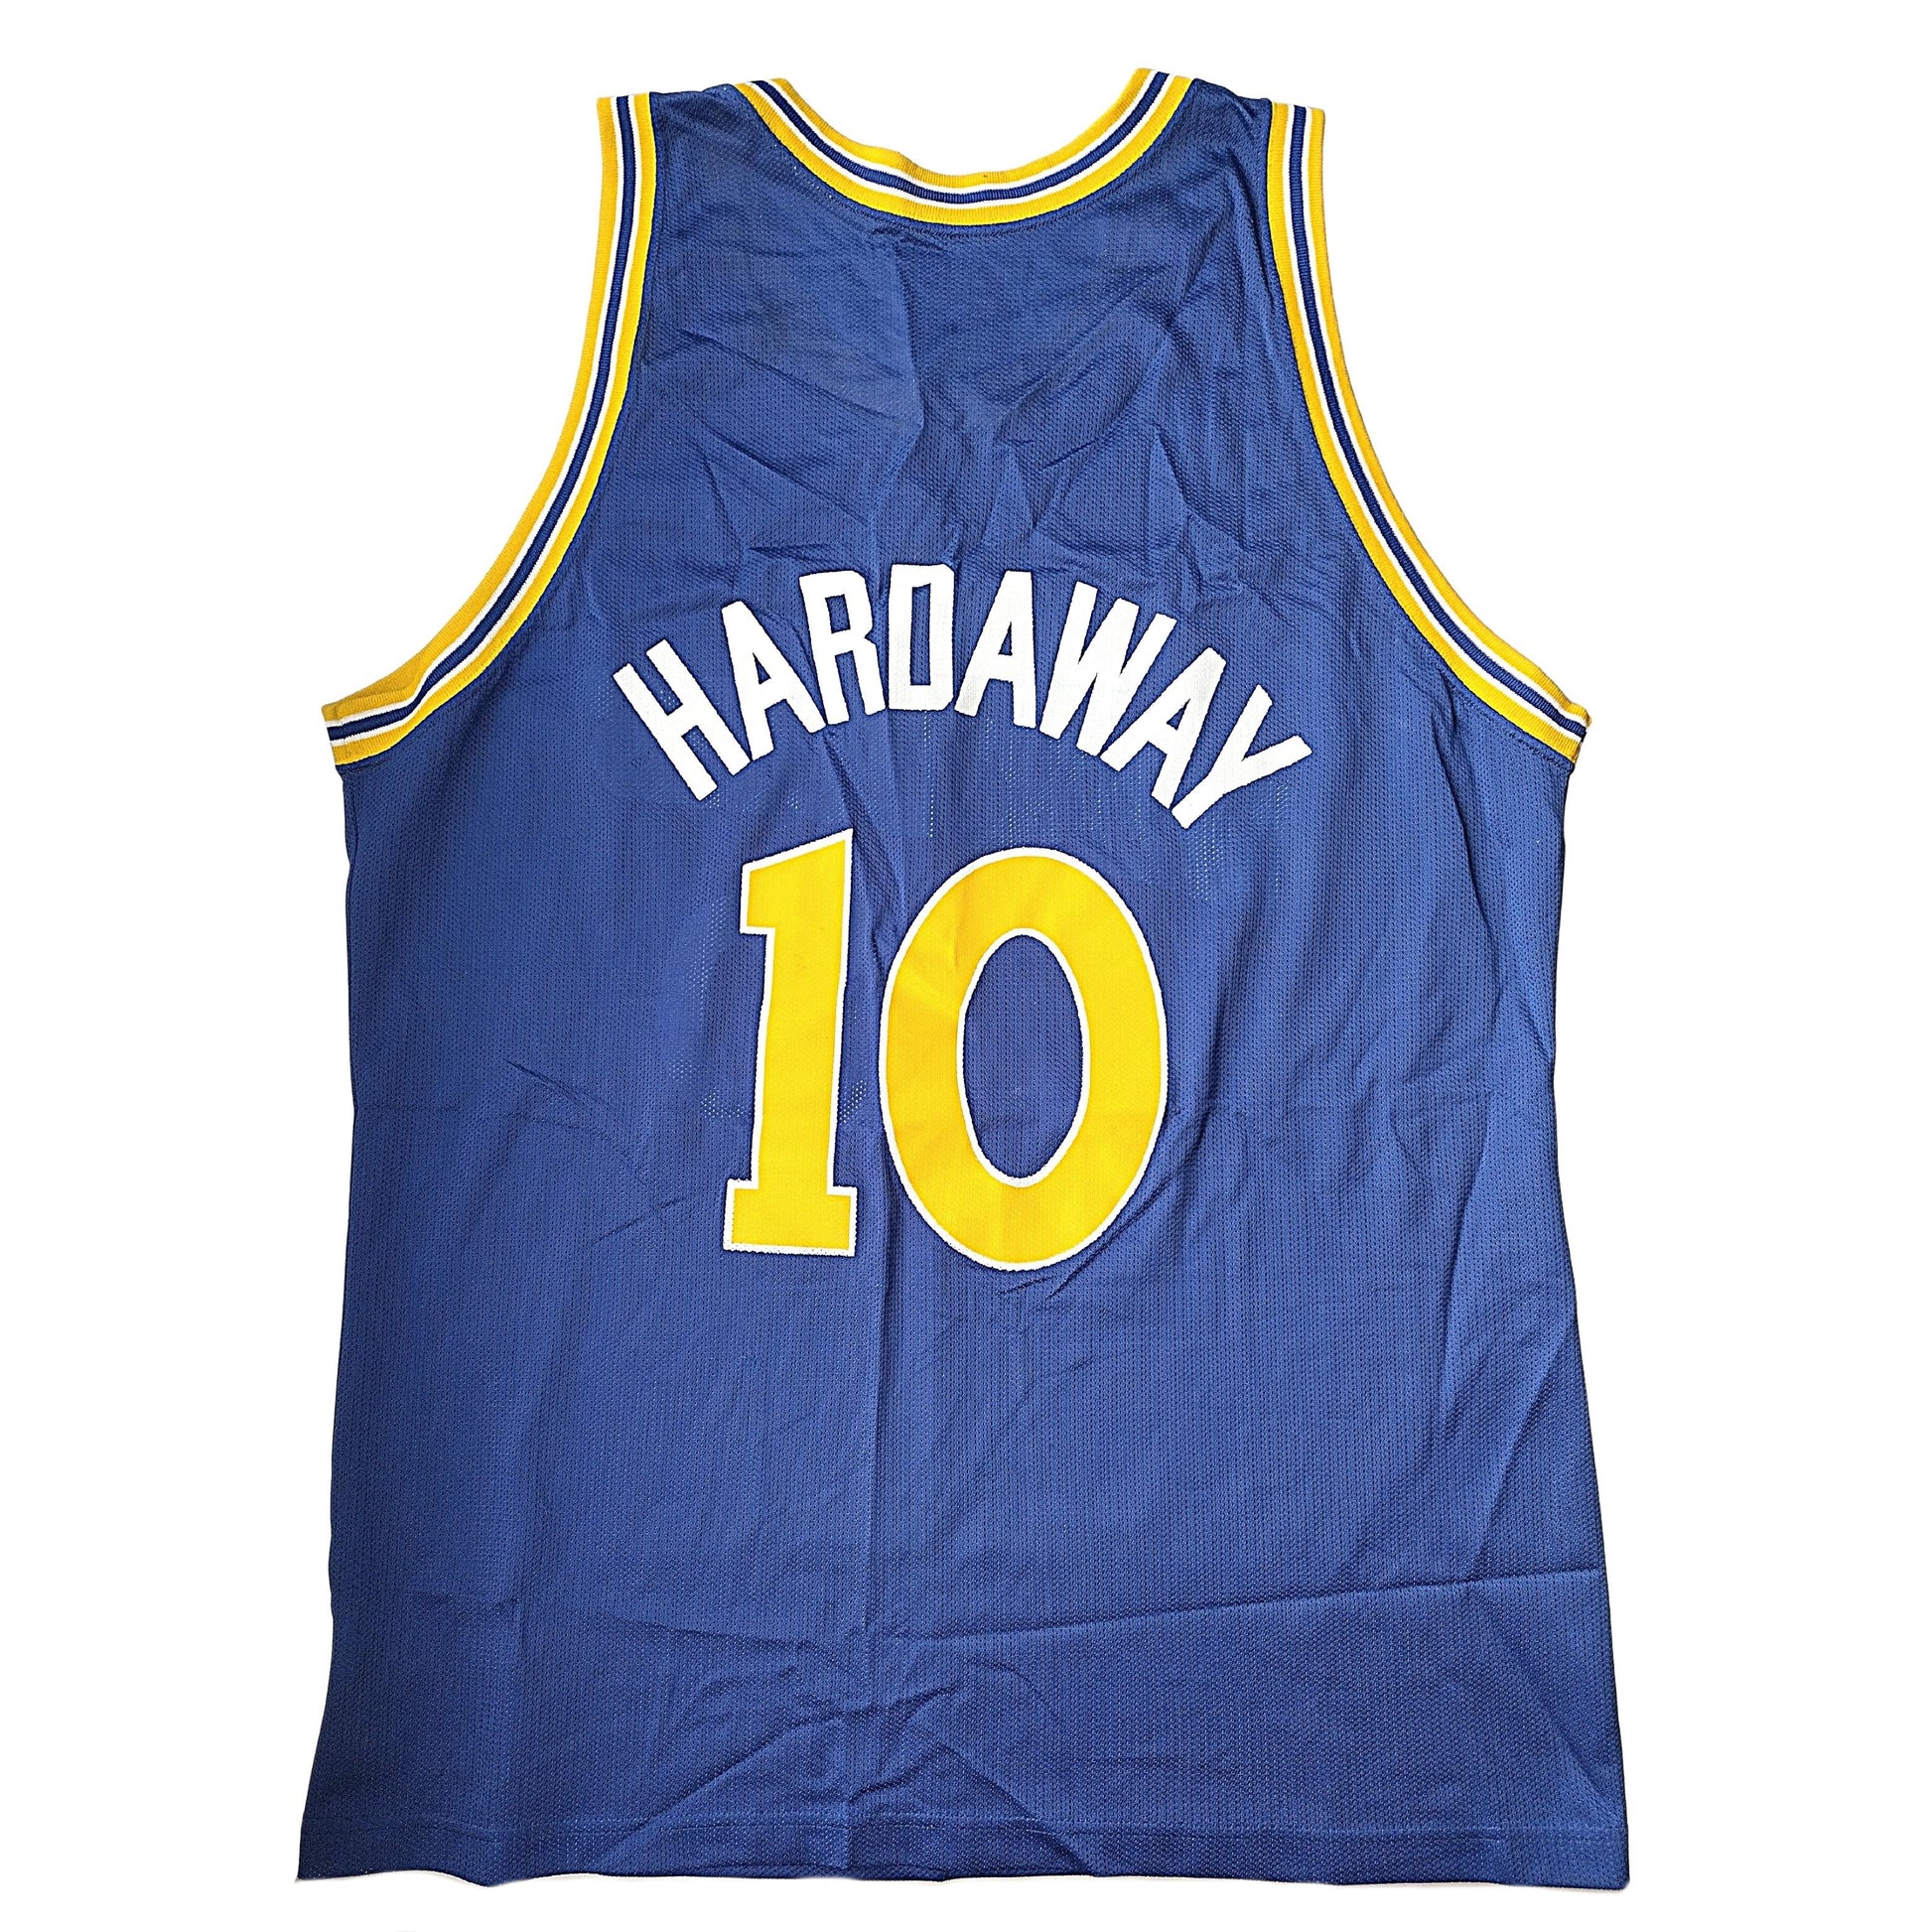 Tim Hardaway Jersey 